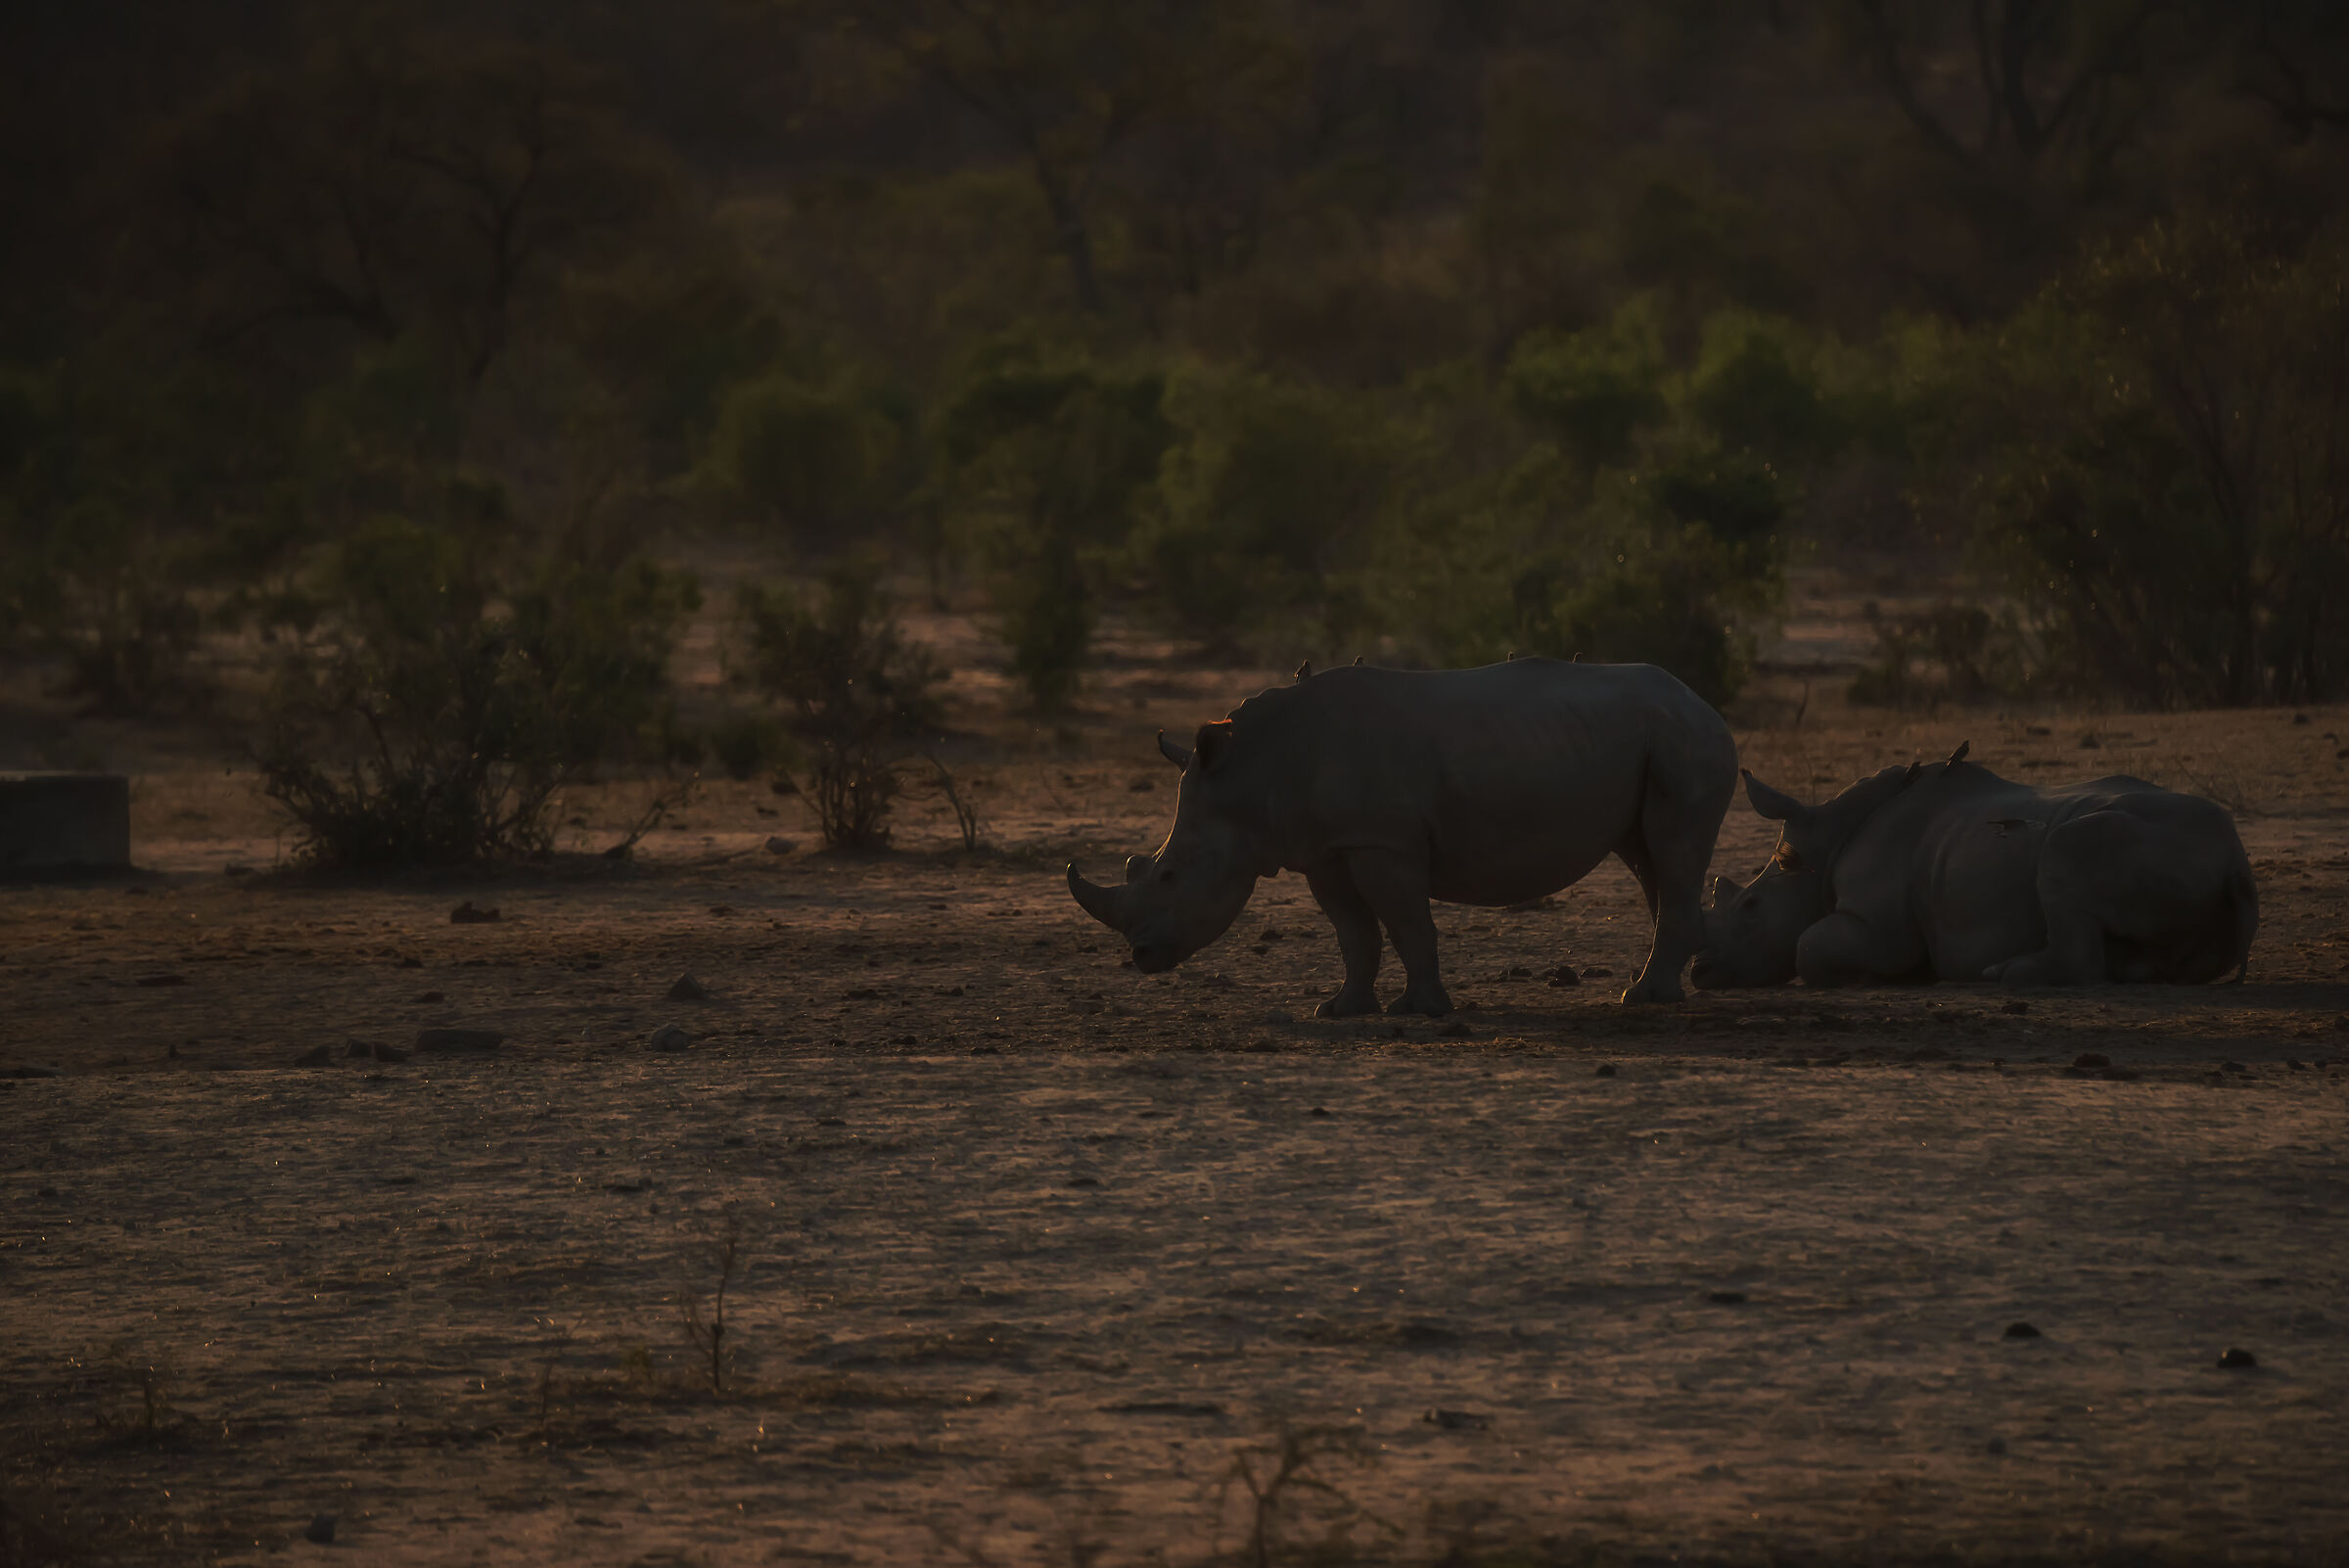 Rhino sunset...